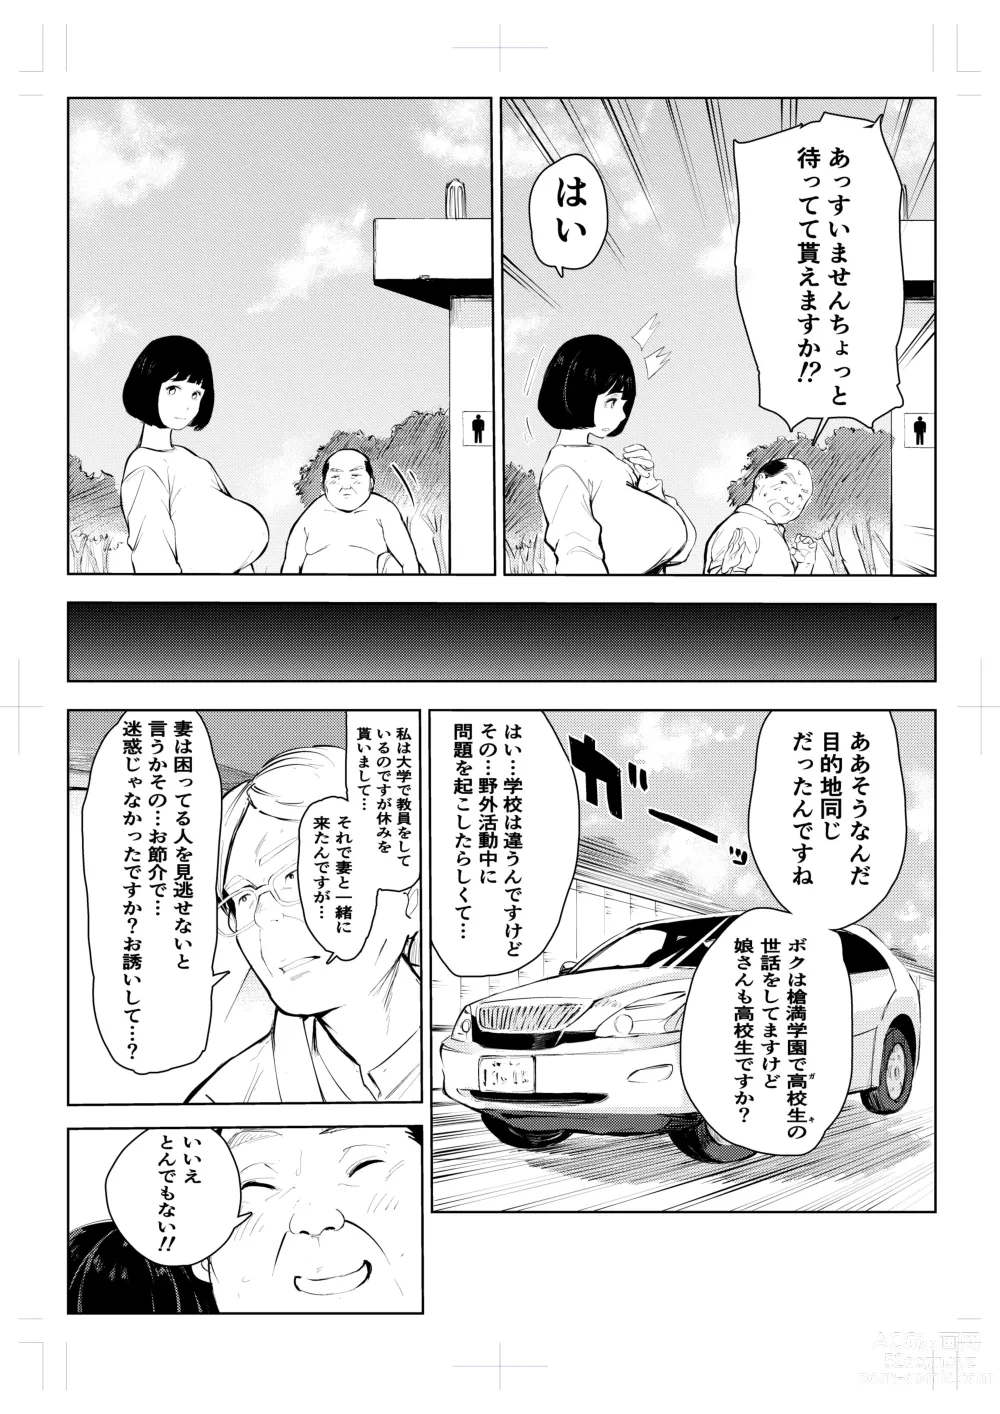 Page 17 of doujinshi 40-sai no Mahoutsukai 4